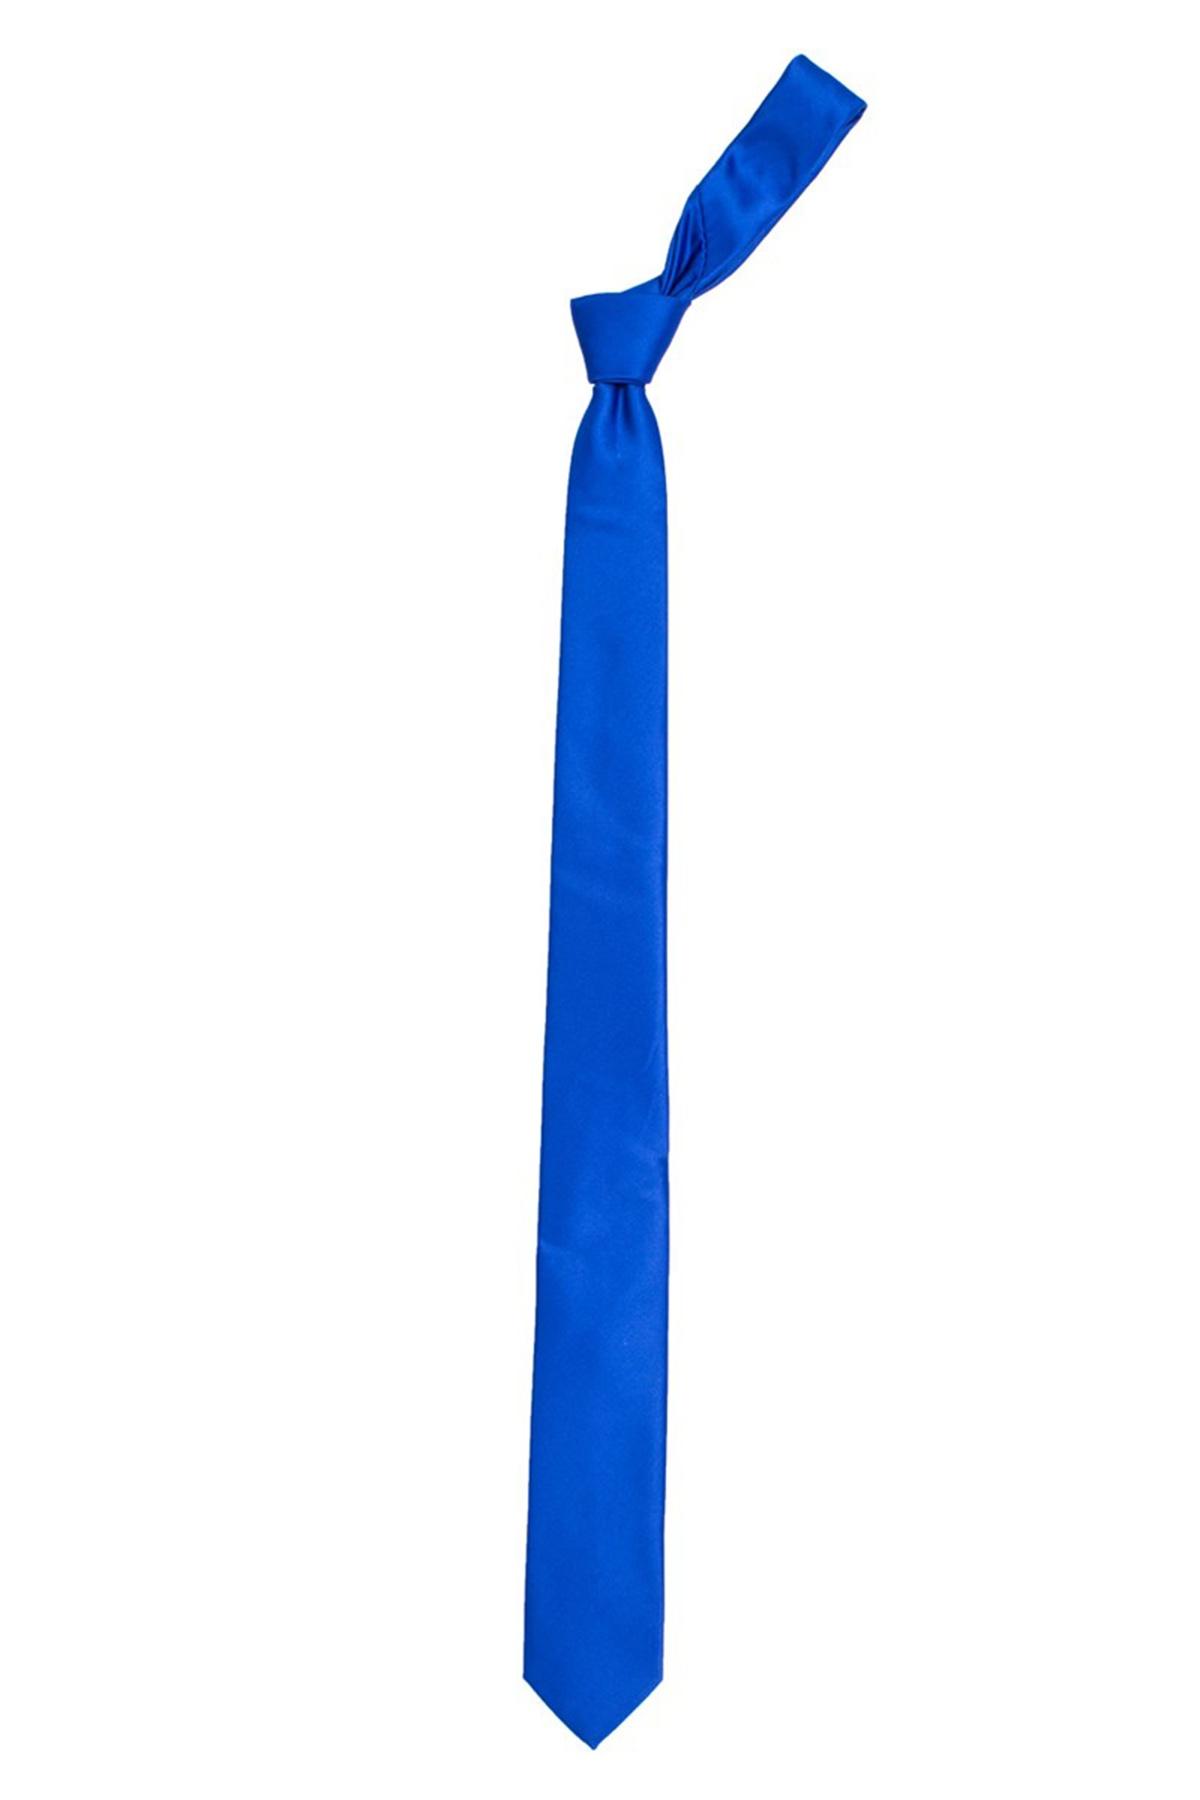 Selected image for TUDORS Uža kravata plava